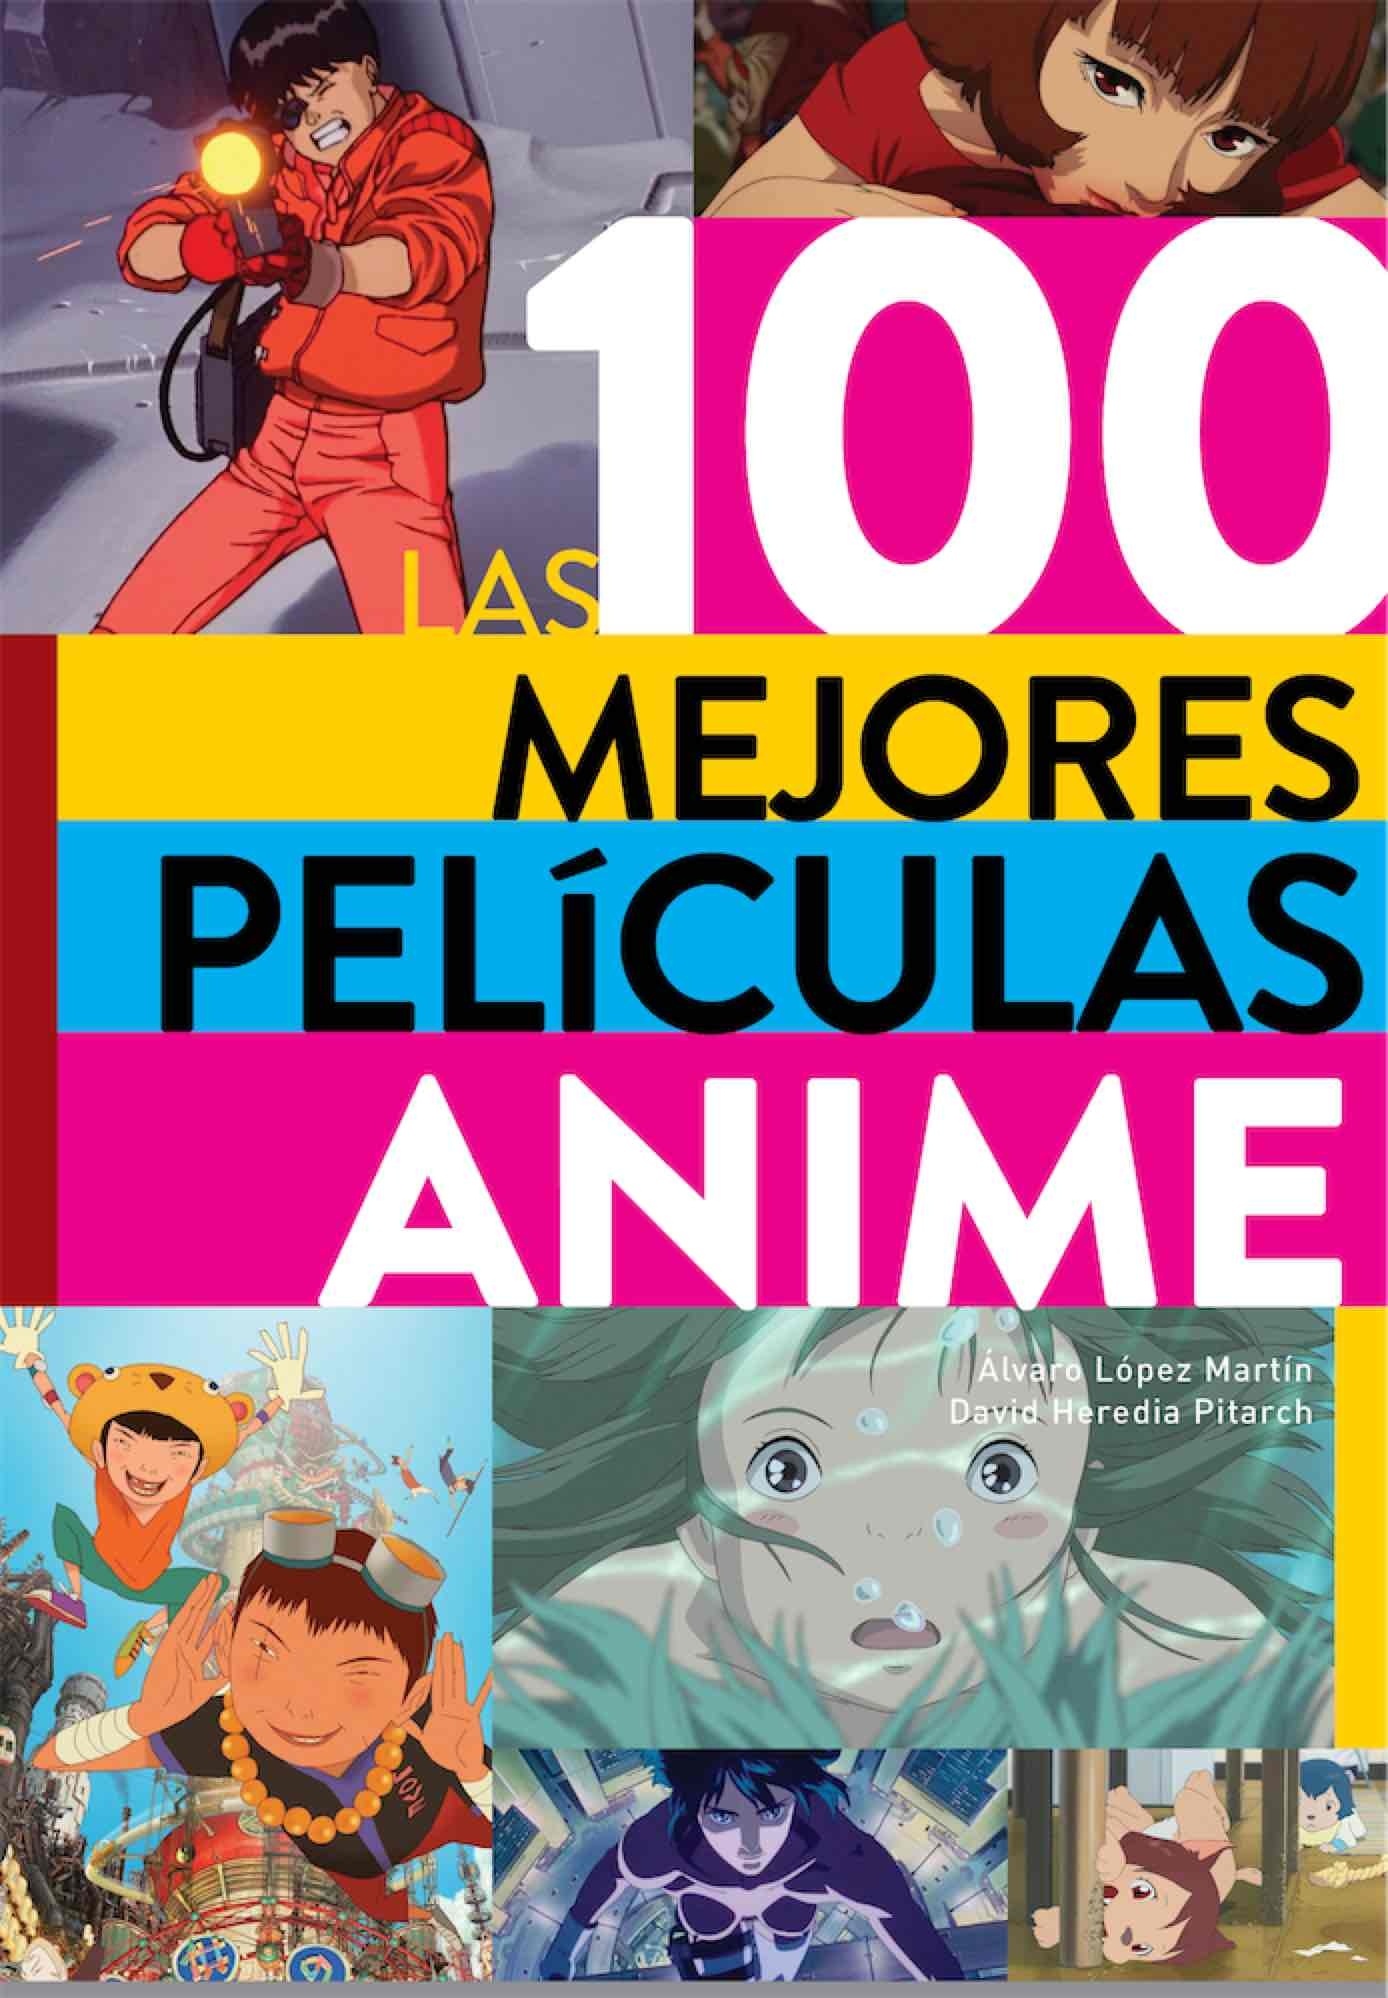 100 mejores películas anime, Las